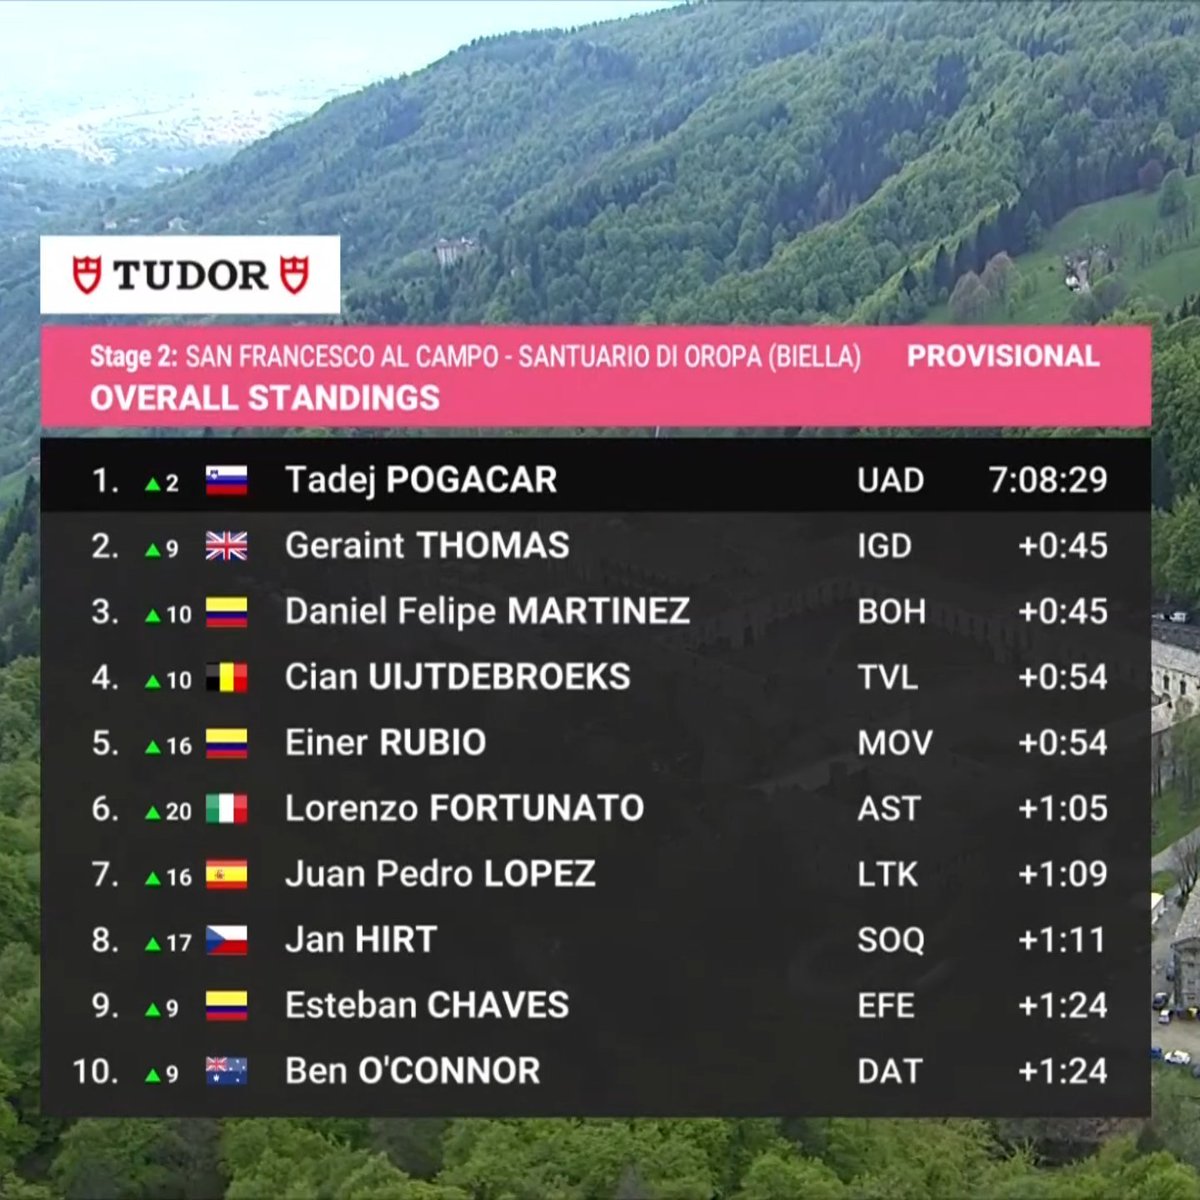 Así quedo la general del Giro De Italia después de la etapa 2 Pogacar ya es el líder indiscutido, pero vemos la presencia de 3 colombianos metidos en el top 10... 🇨🇴 Será una batalla muy interesante por el Podio. 🔥